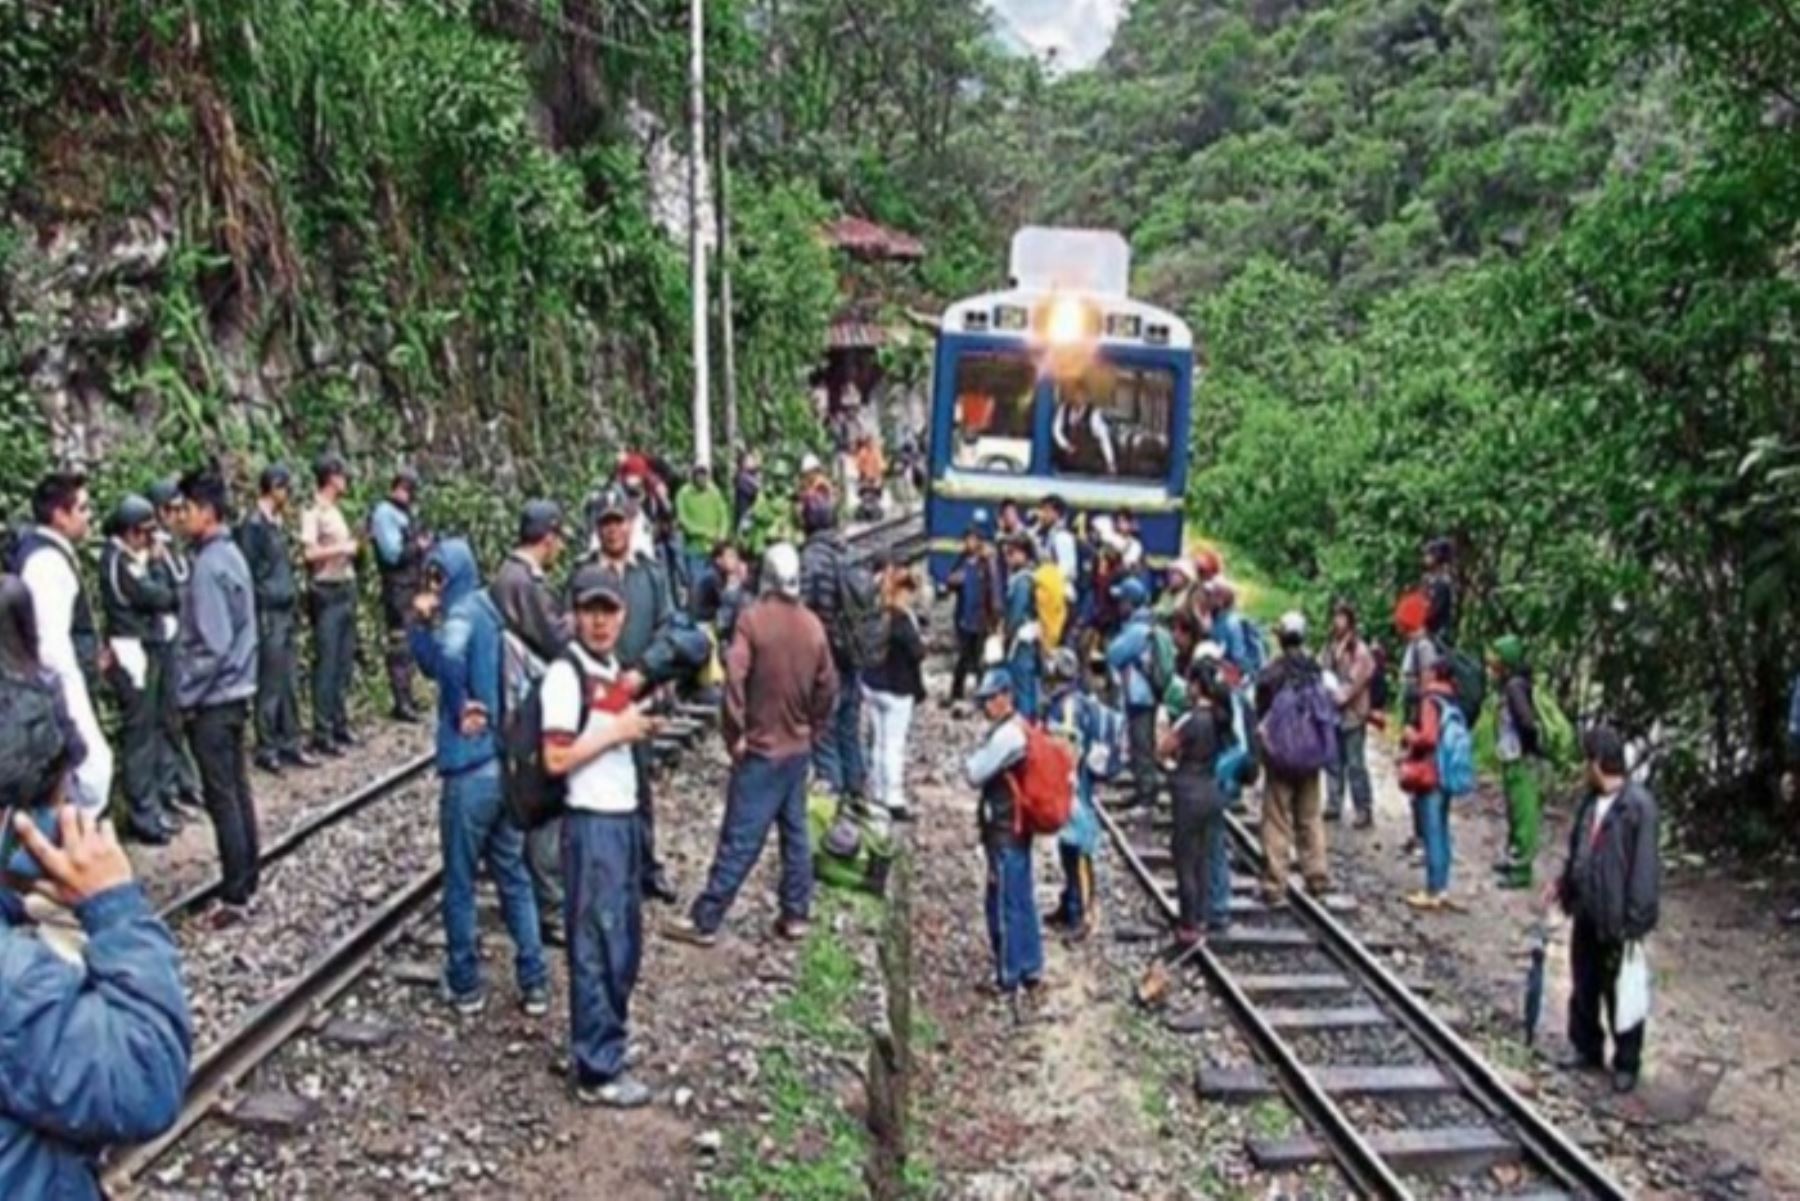 Con el puente humanitario se podrían dar facilidades para que el tren pueda salir de Machu Picchu hasta Ollantaytambo y de Ollantaytambo hacia la ciudad del Cusco en unidades vehiculares. Foto: Internet/Medios